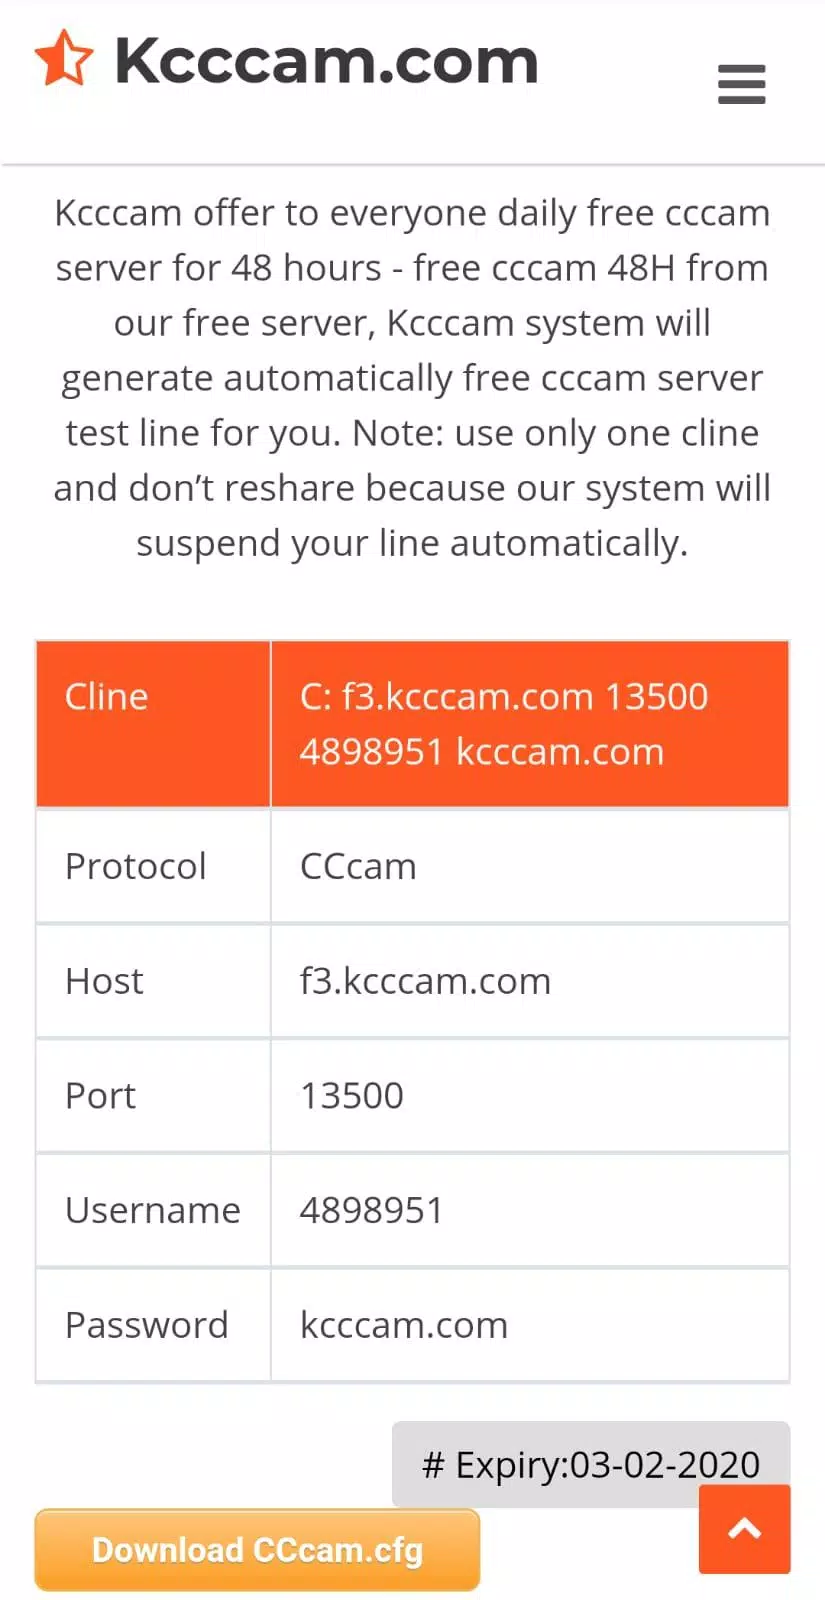 Free CCcam 48H Hours, Kcccam.com Free CCcam Server APK pour Android  Télécharger